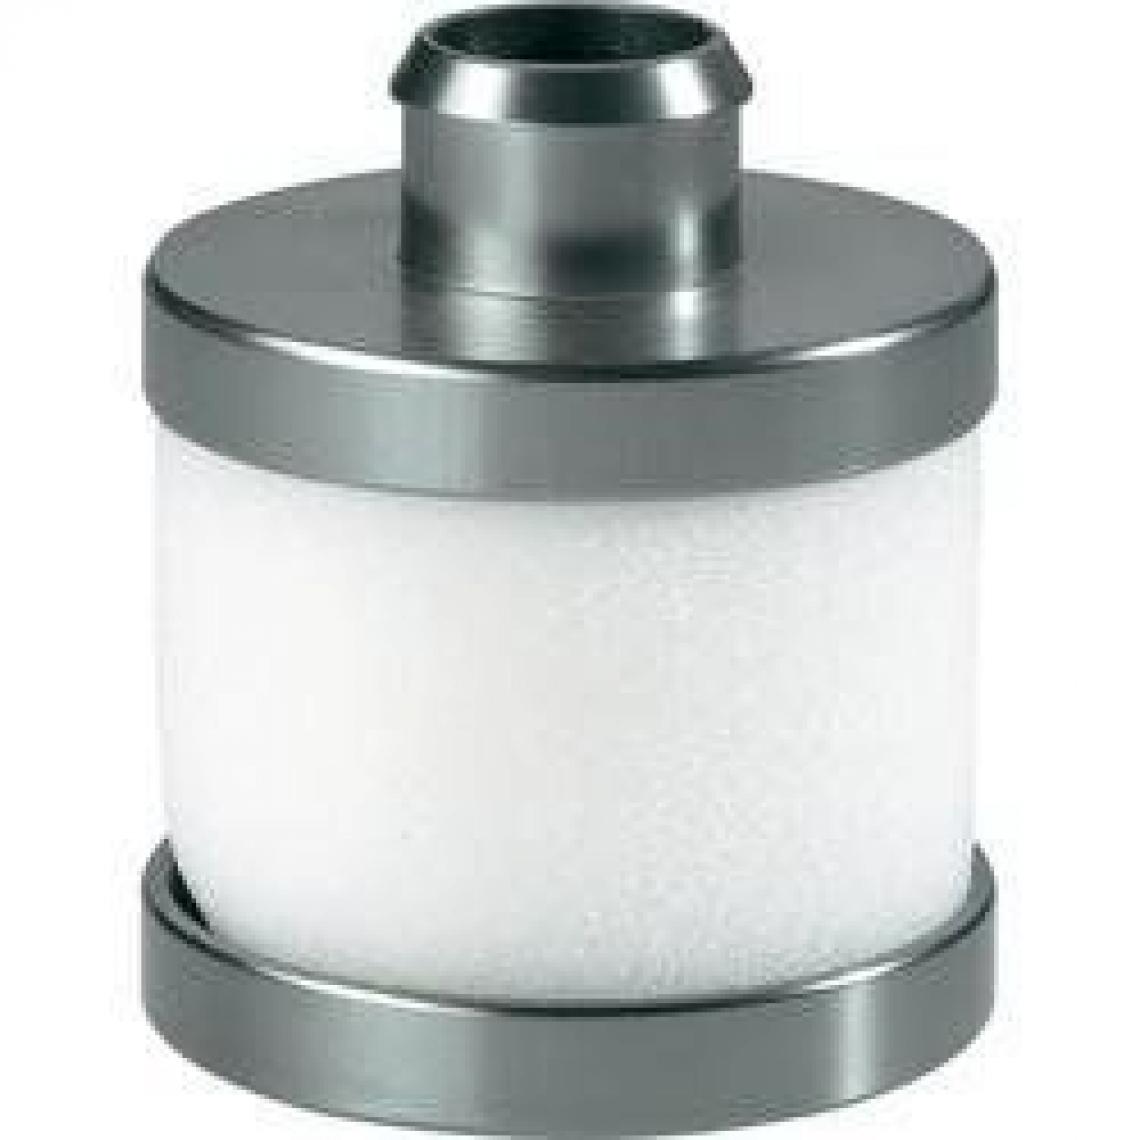 Inconnu - Filtre à air aluminium 1:8 - Accessoires et pièces